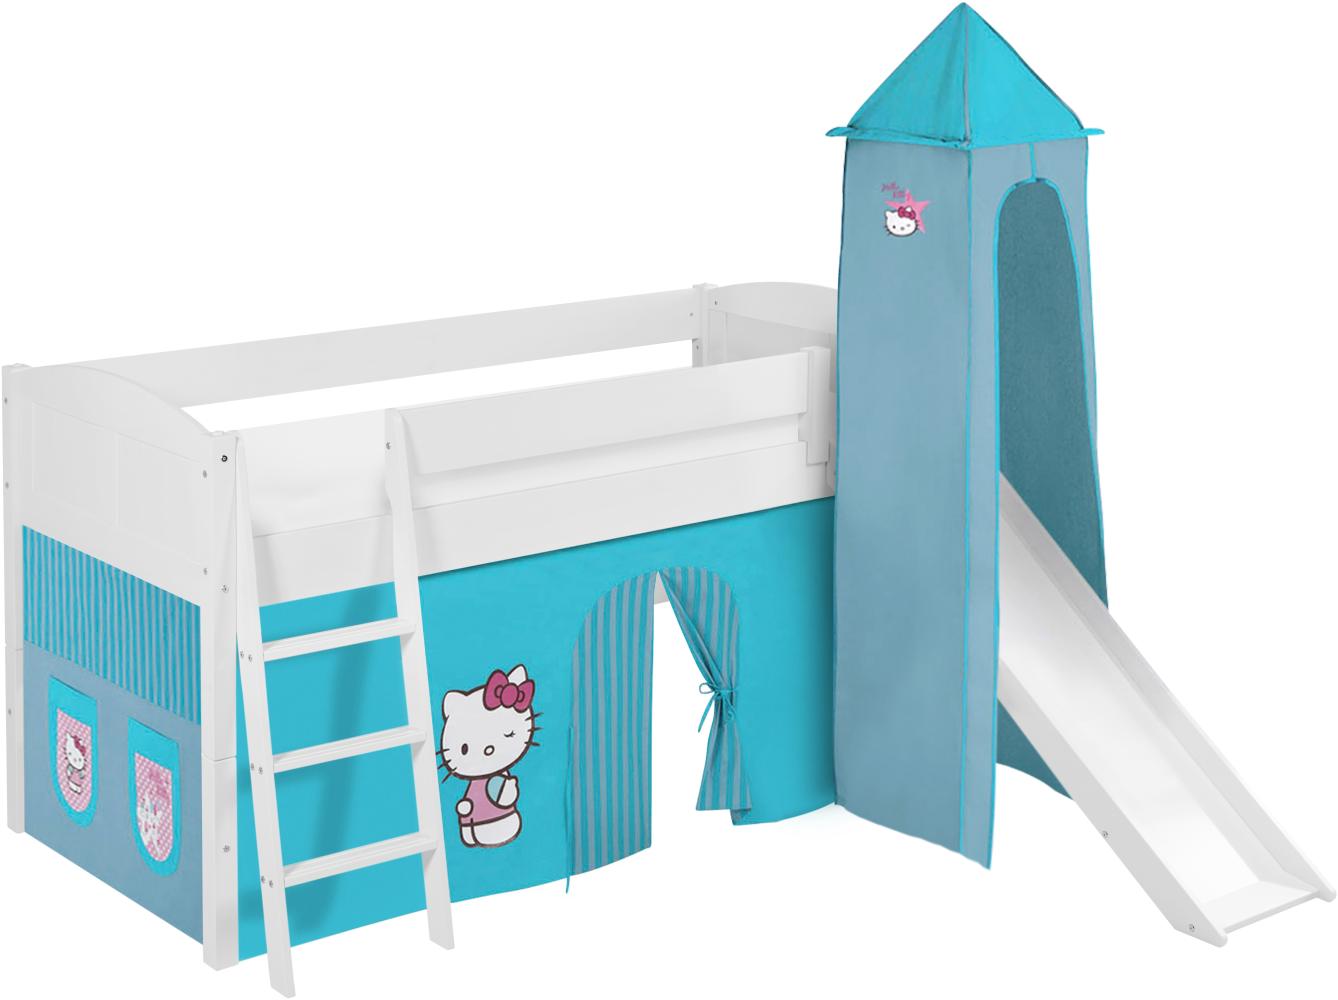 Lilokids 'Ida 4106' Spielbett 90 x 200 cm, Hello Kitty Türkis, Kiefer massiv, mit Turm, Rutsche und Vorhang Bild 1